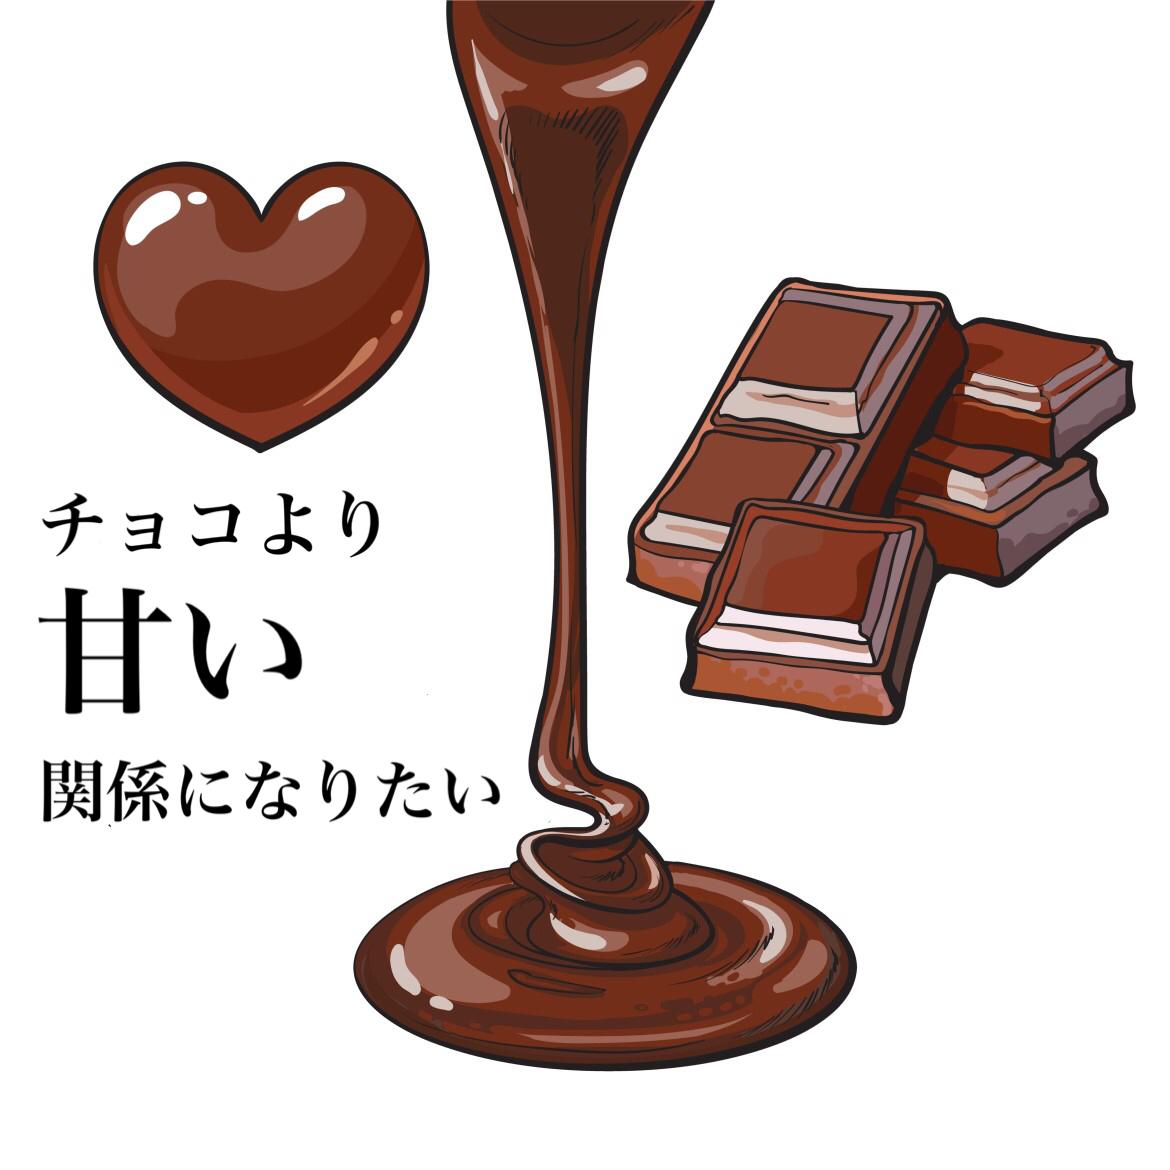 男性の血液型で分かる もらって嬉しいチョコレート Charmmy